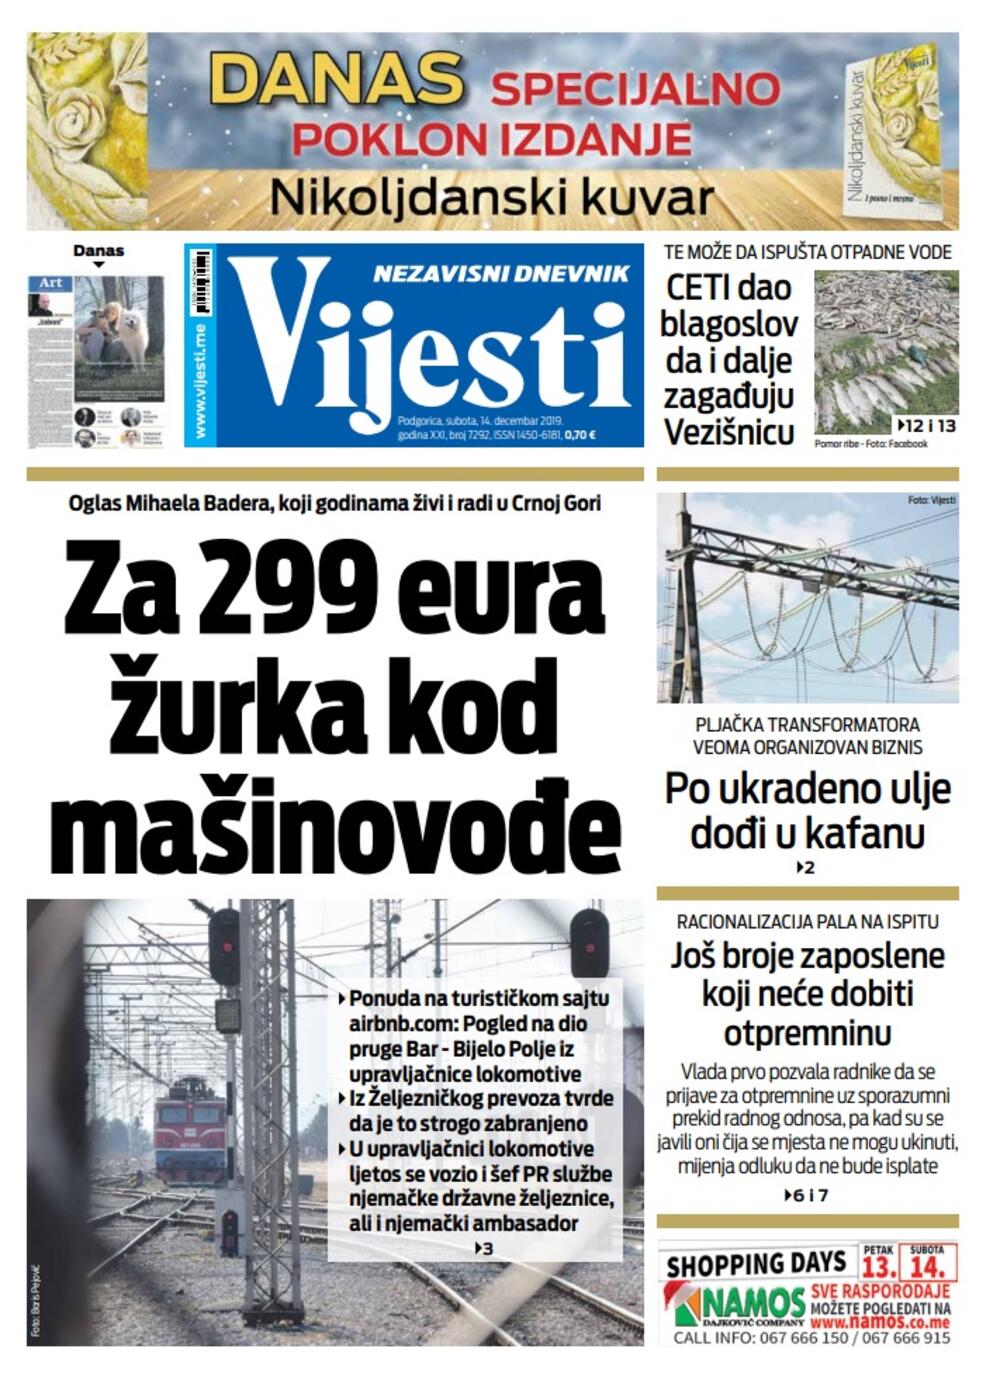 Naslovna strana "Vijesti" za 14. decembar 2019.